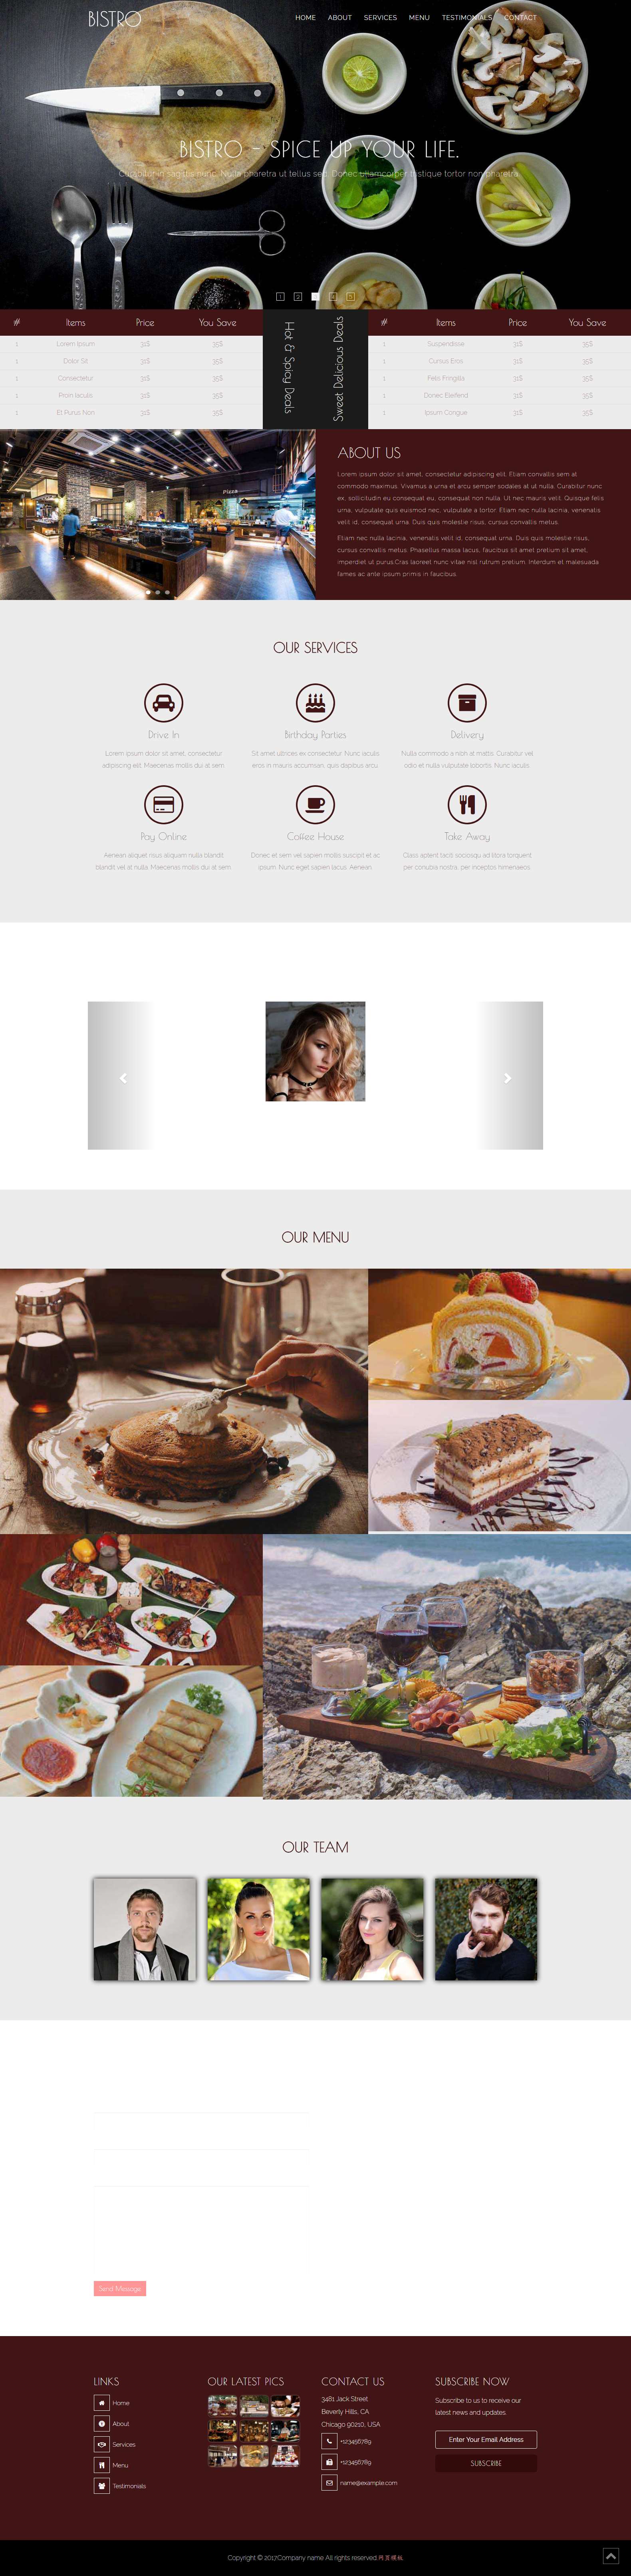 红色宽屏风格的美食食材网站模板下载